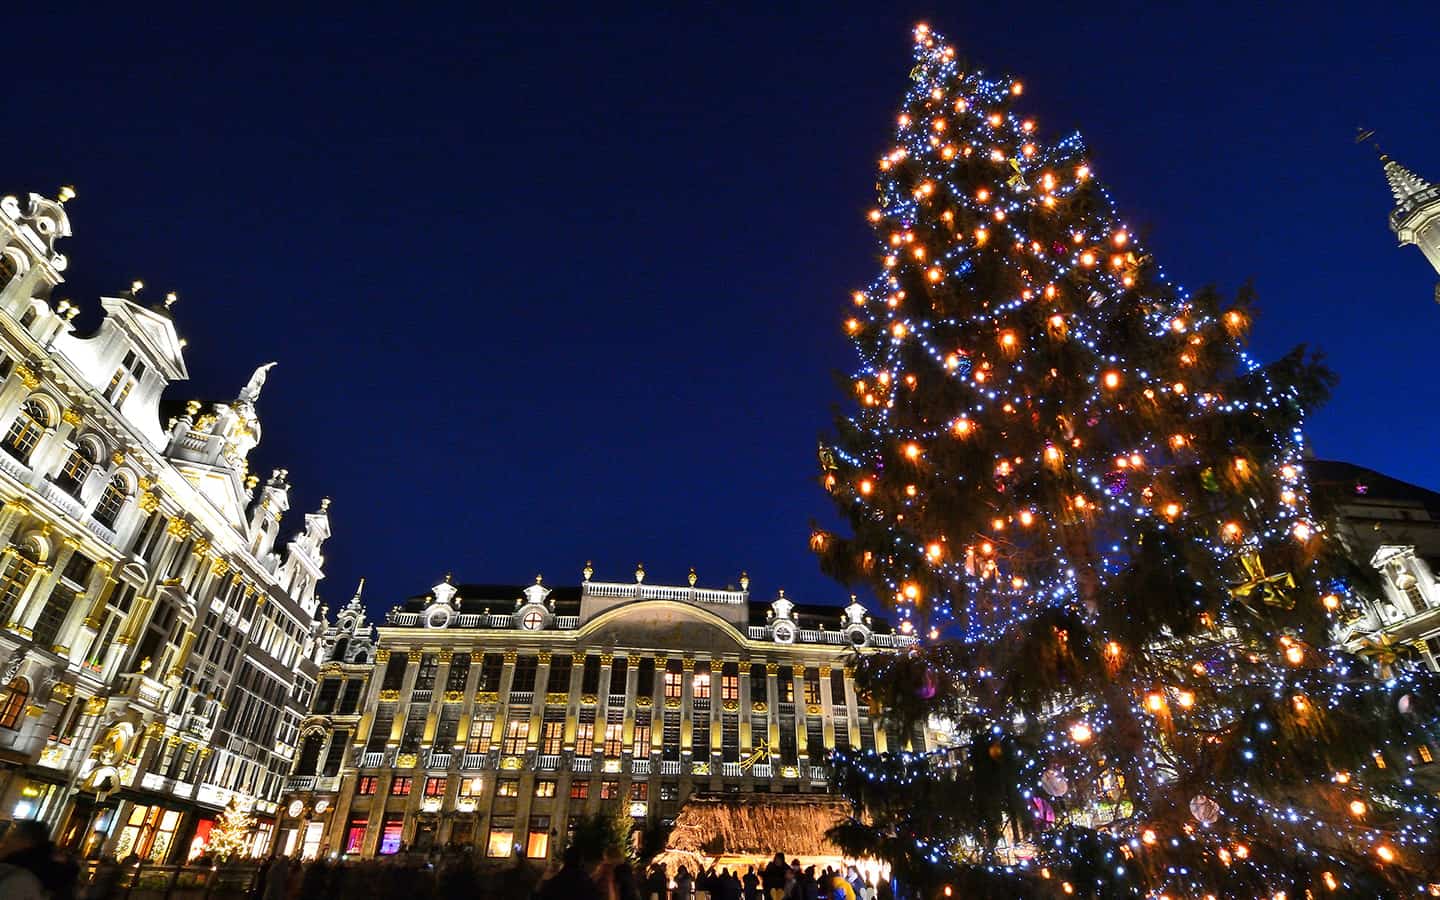 Am Grand Place Brussel mit bunter Beleuchtung dekorierte Weihnachtsbaum